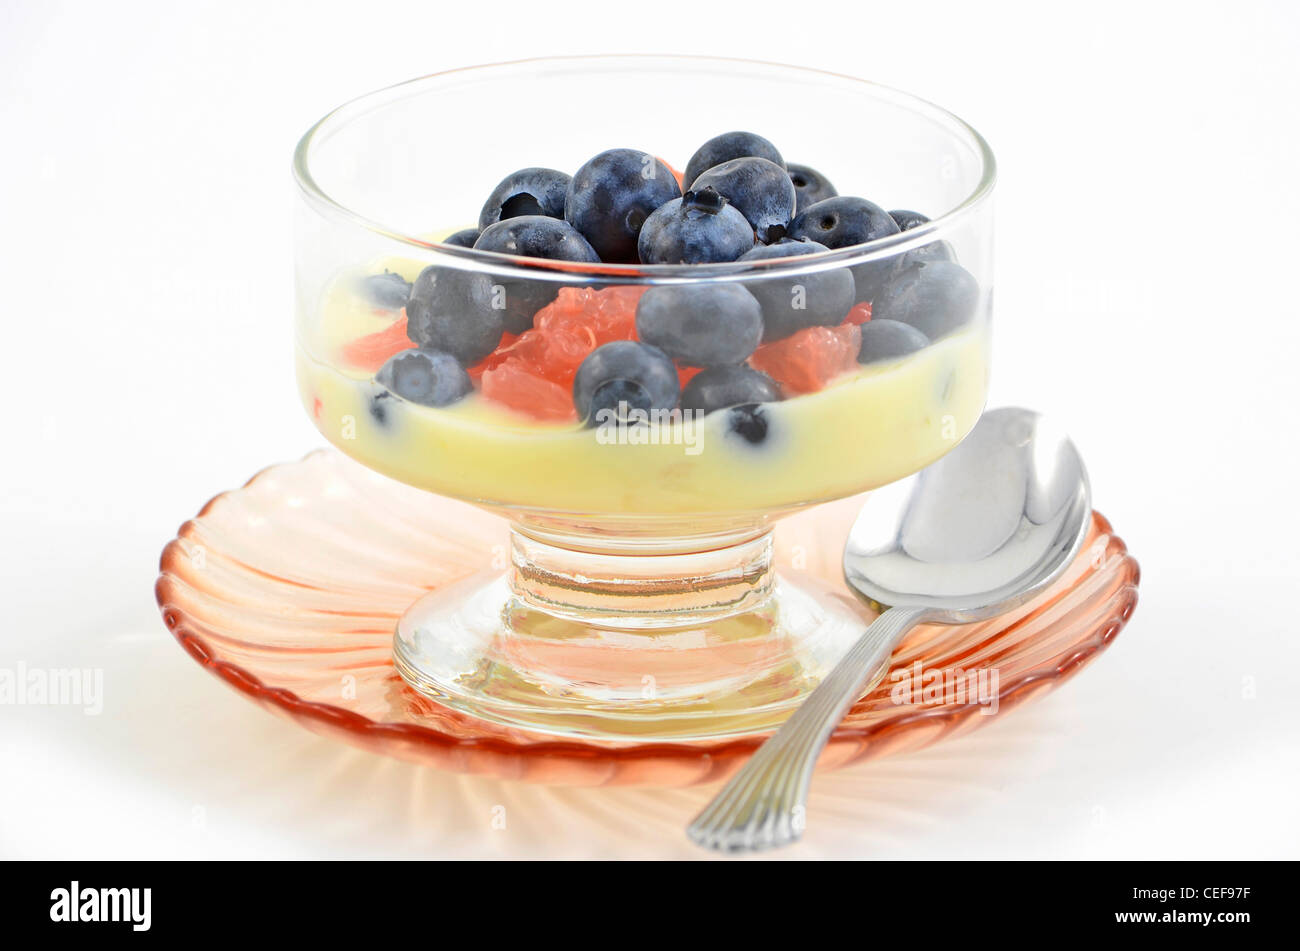 Les bleuets, yaourt citron et pamplemousse rouge cocktail au format horizontal Banque D'Images